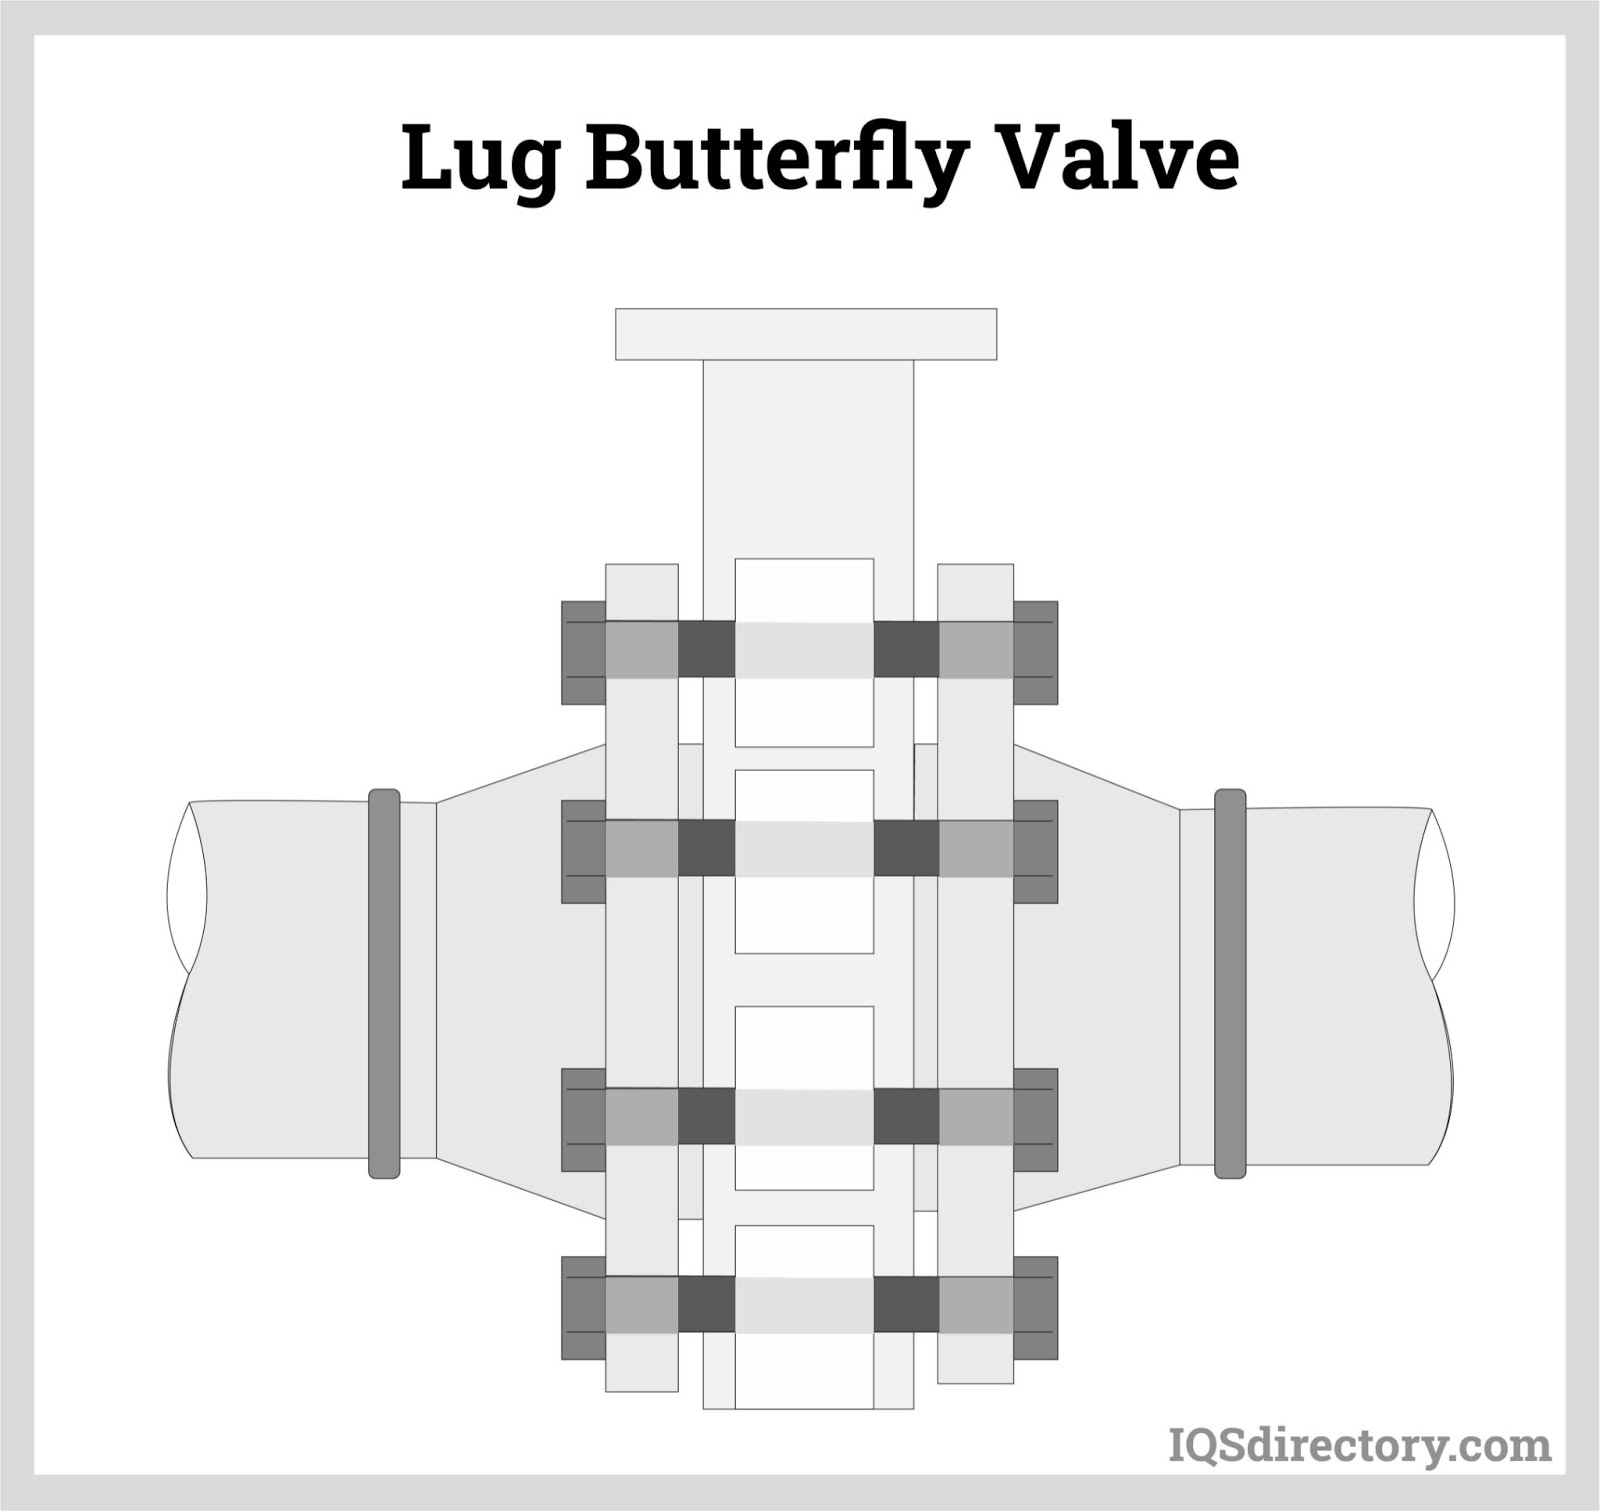 Lug Butterfly Valve